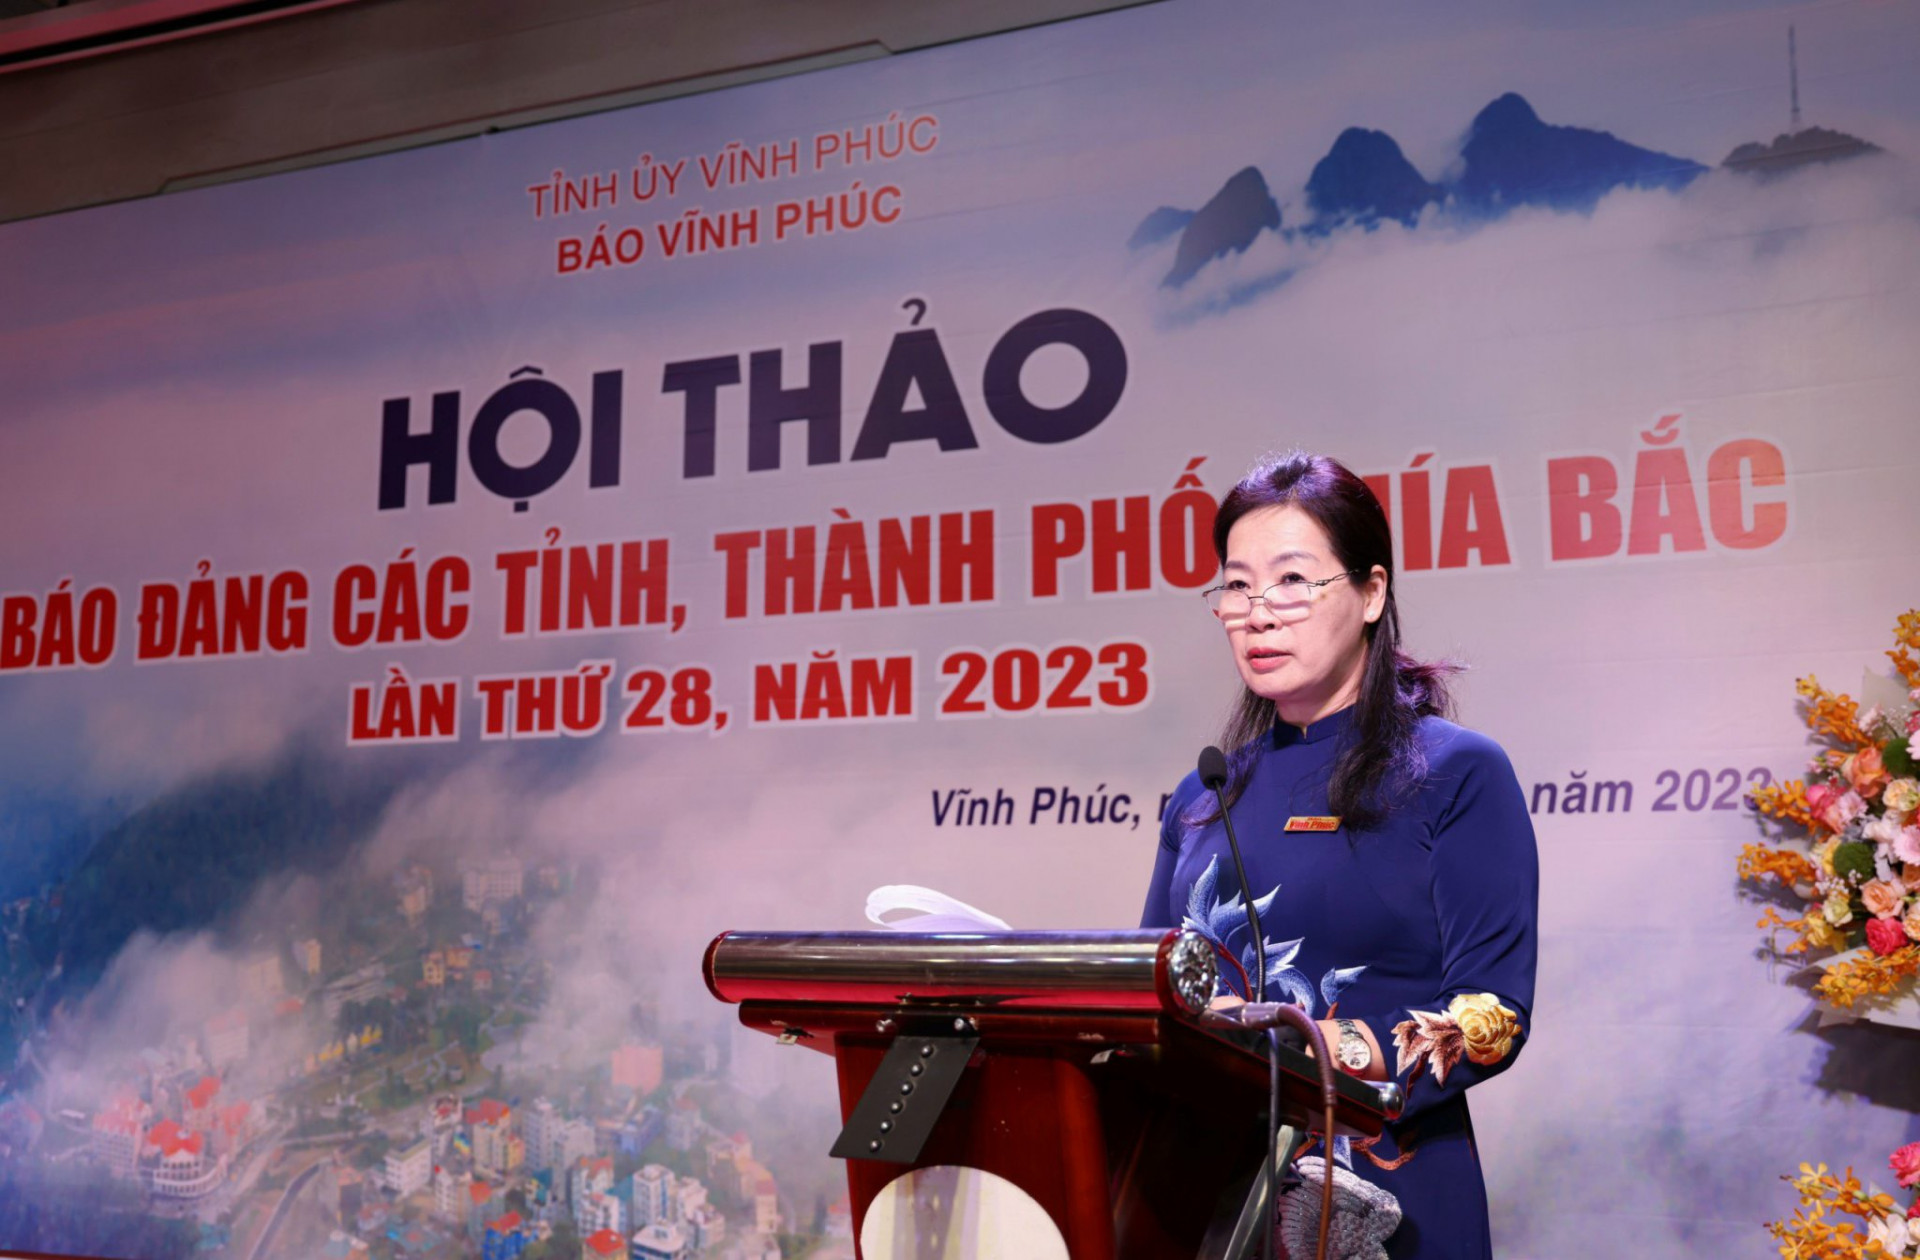 Bà Hoàng Thị Nhung - Tổng Biên tập Báo Vĩnh Phúc phát biểu đề dẫn hội thảo.